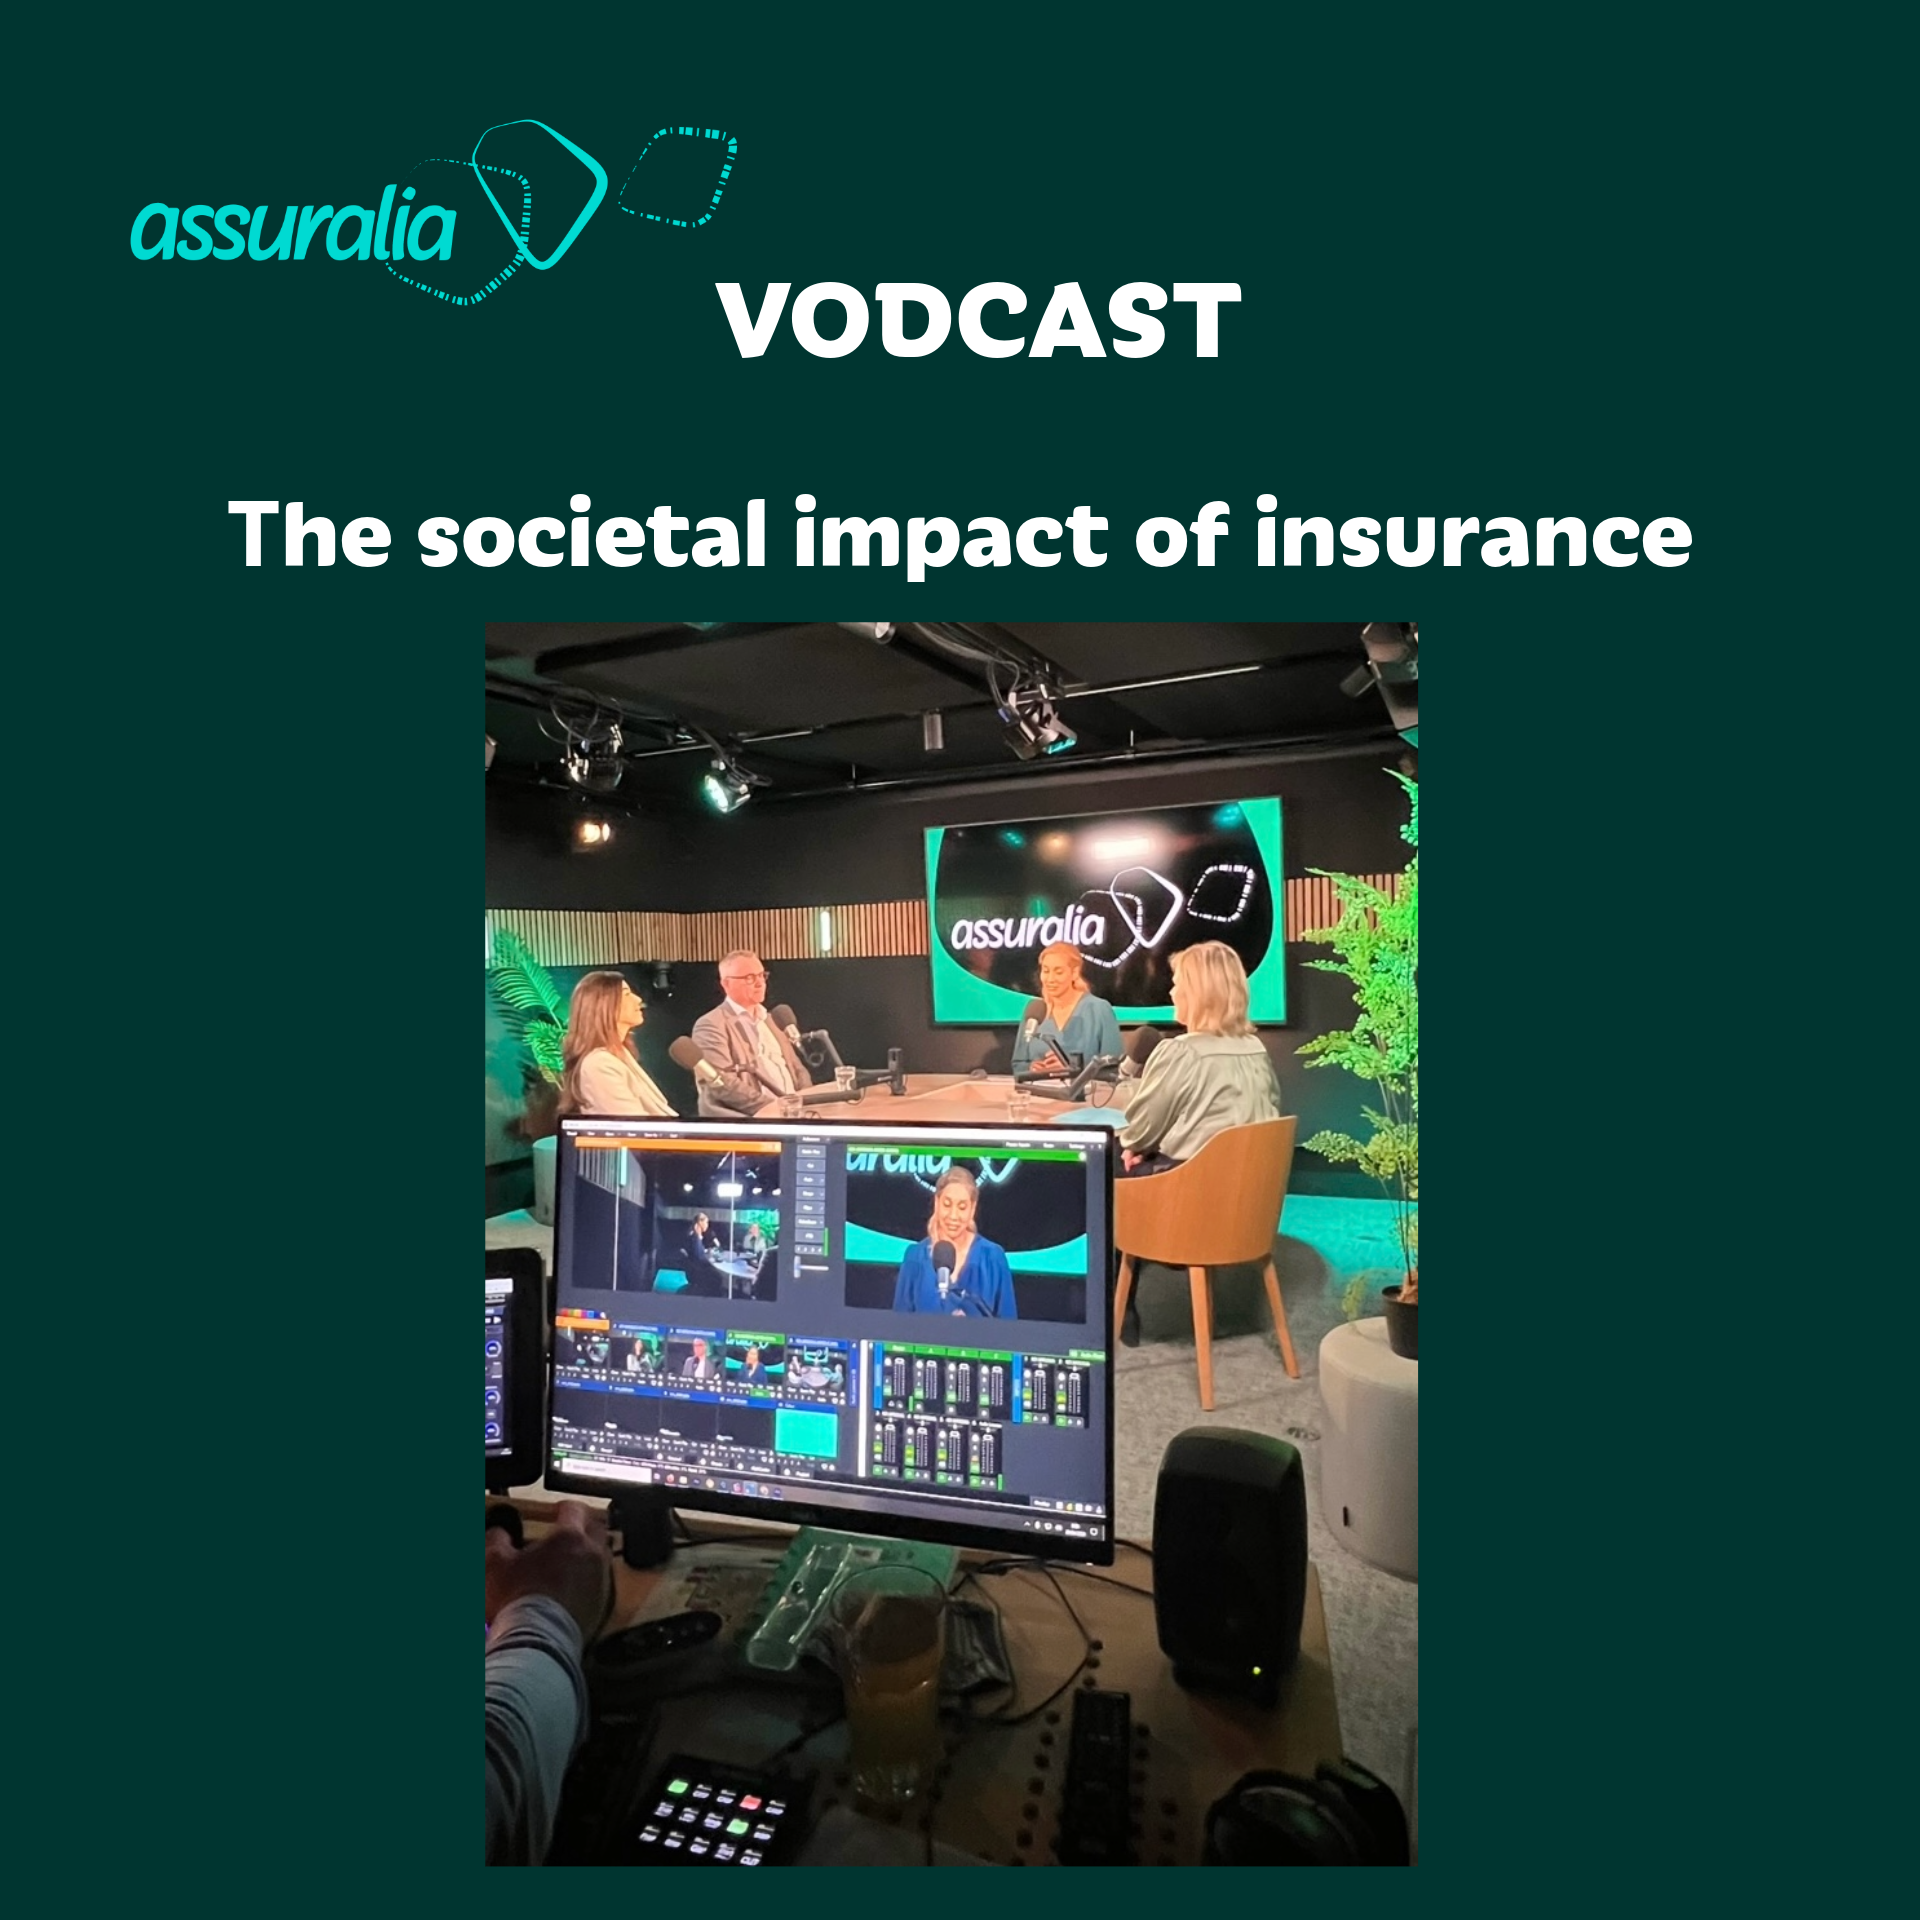 Gloednieuwe vodcast van Assuralia bespreekt grote maatschappelijke evoluties in de verzekeringssector